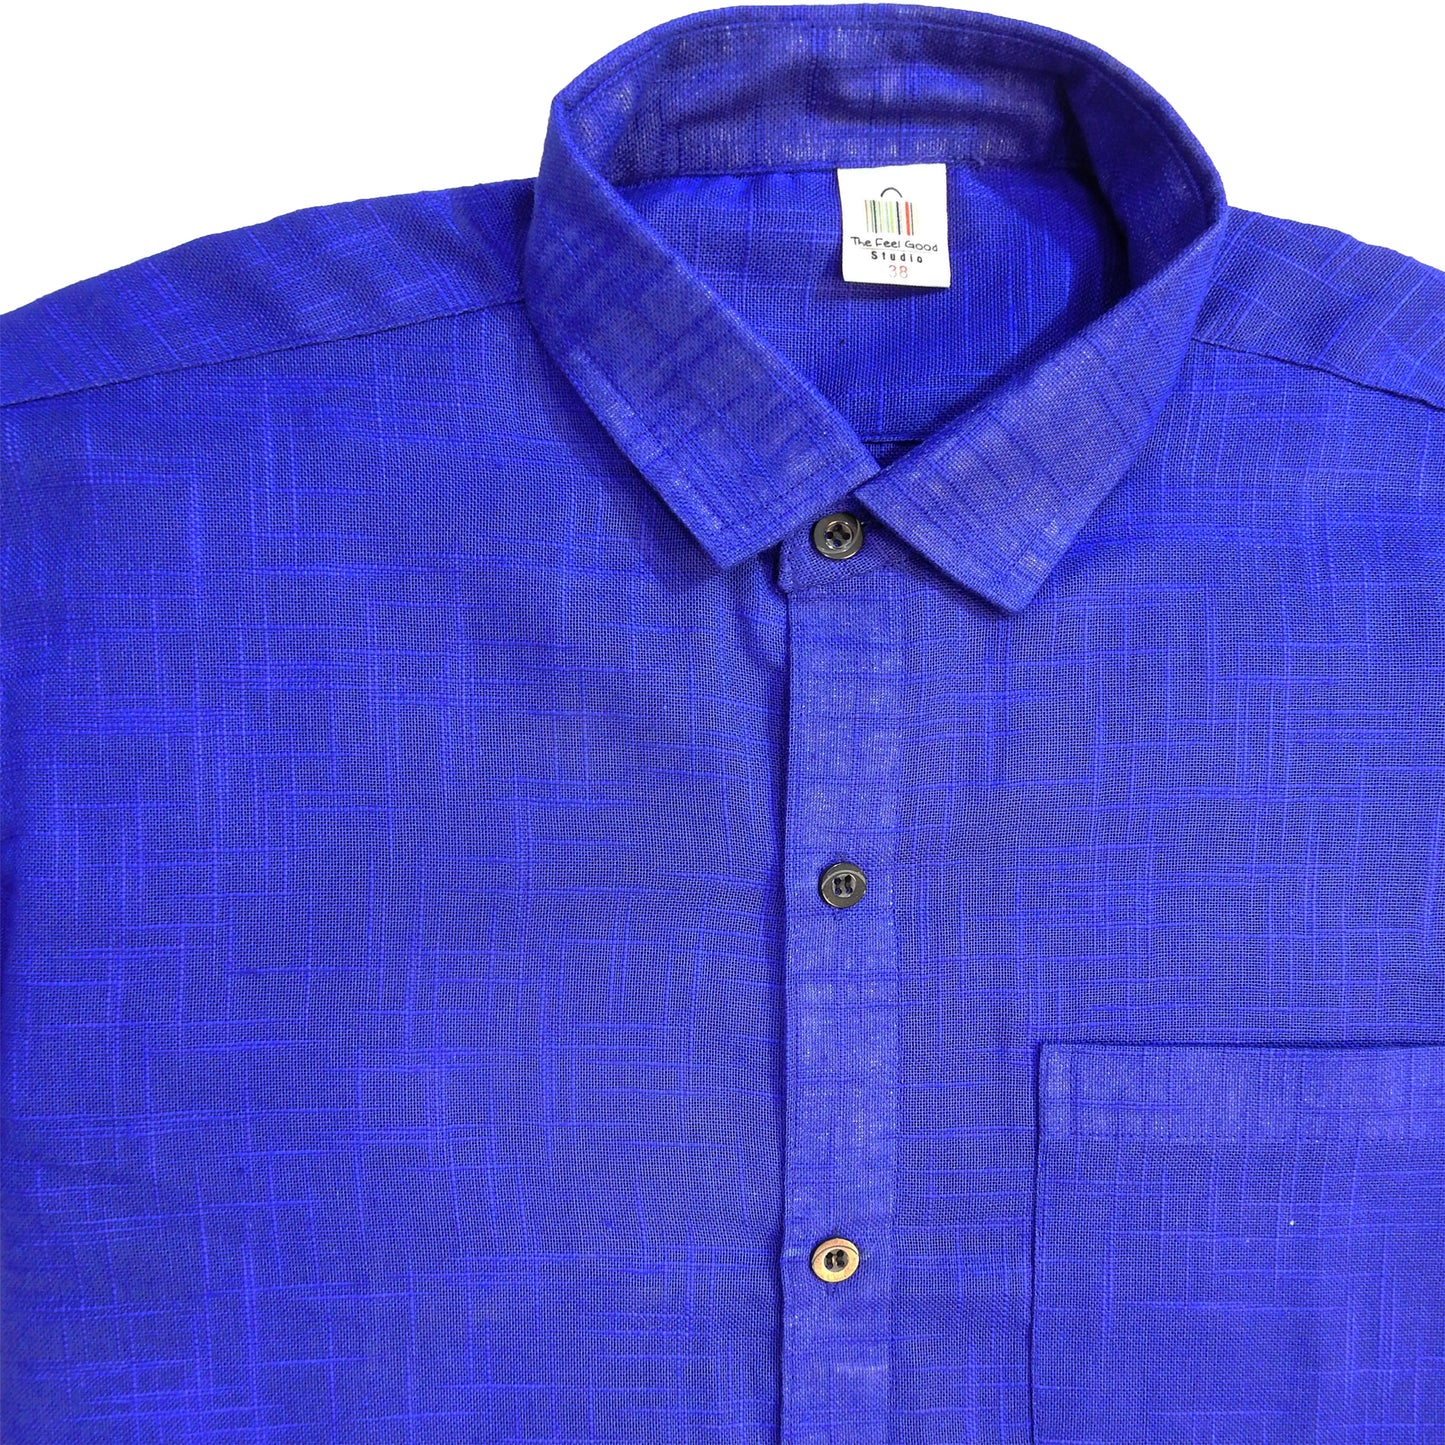 Cobalt Blue Men's Shirt